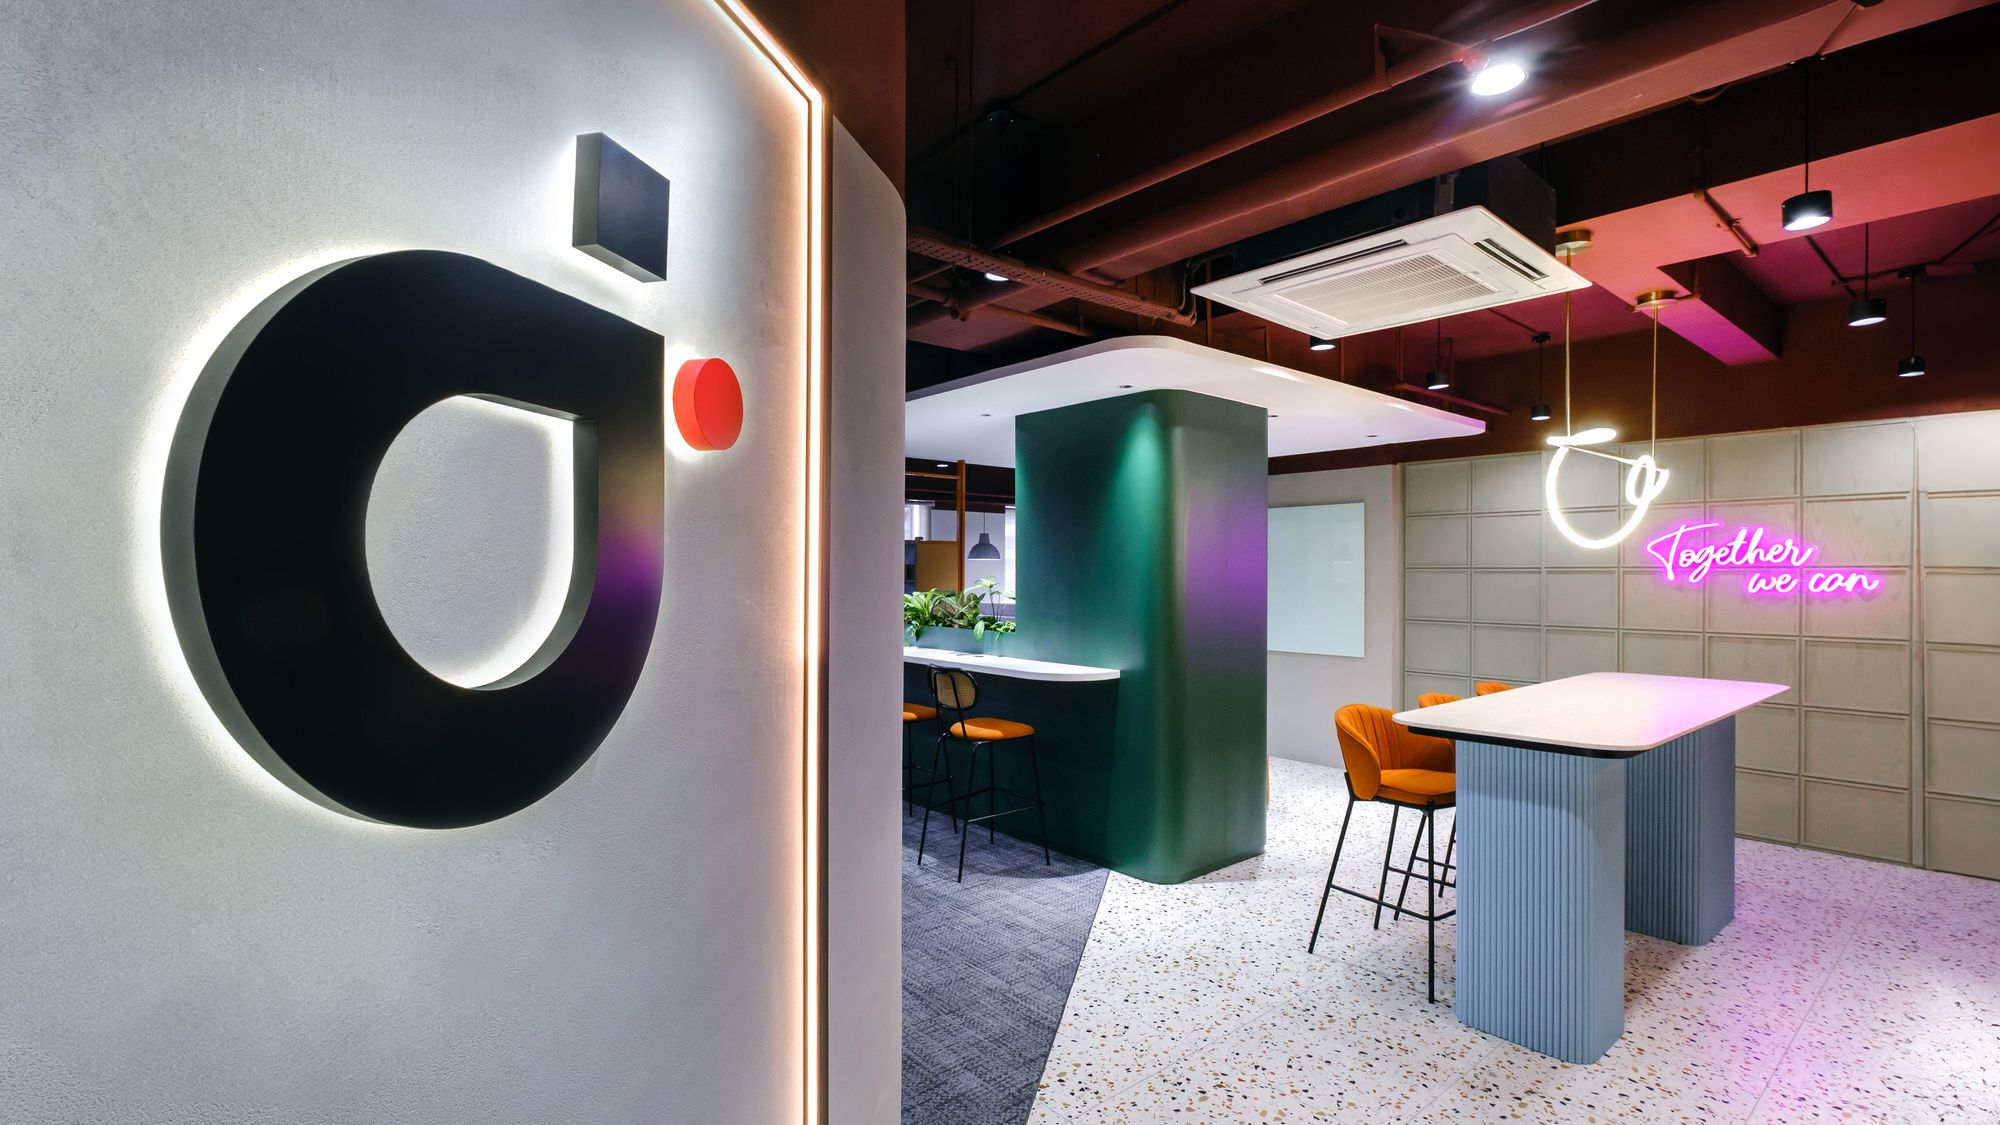 ID综合设计集团办公室——吉隆坡|ART-Arrakis | 建筑室内设计的创新与灵感